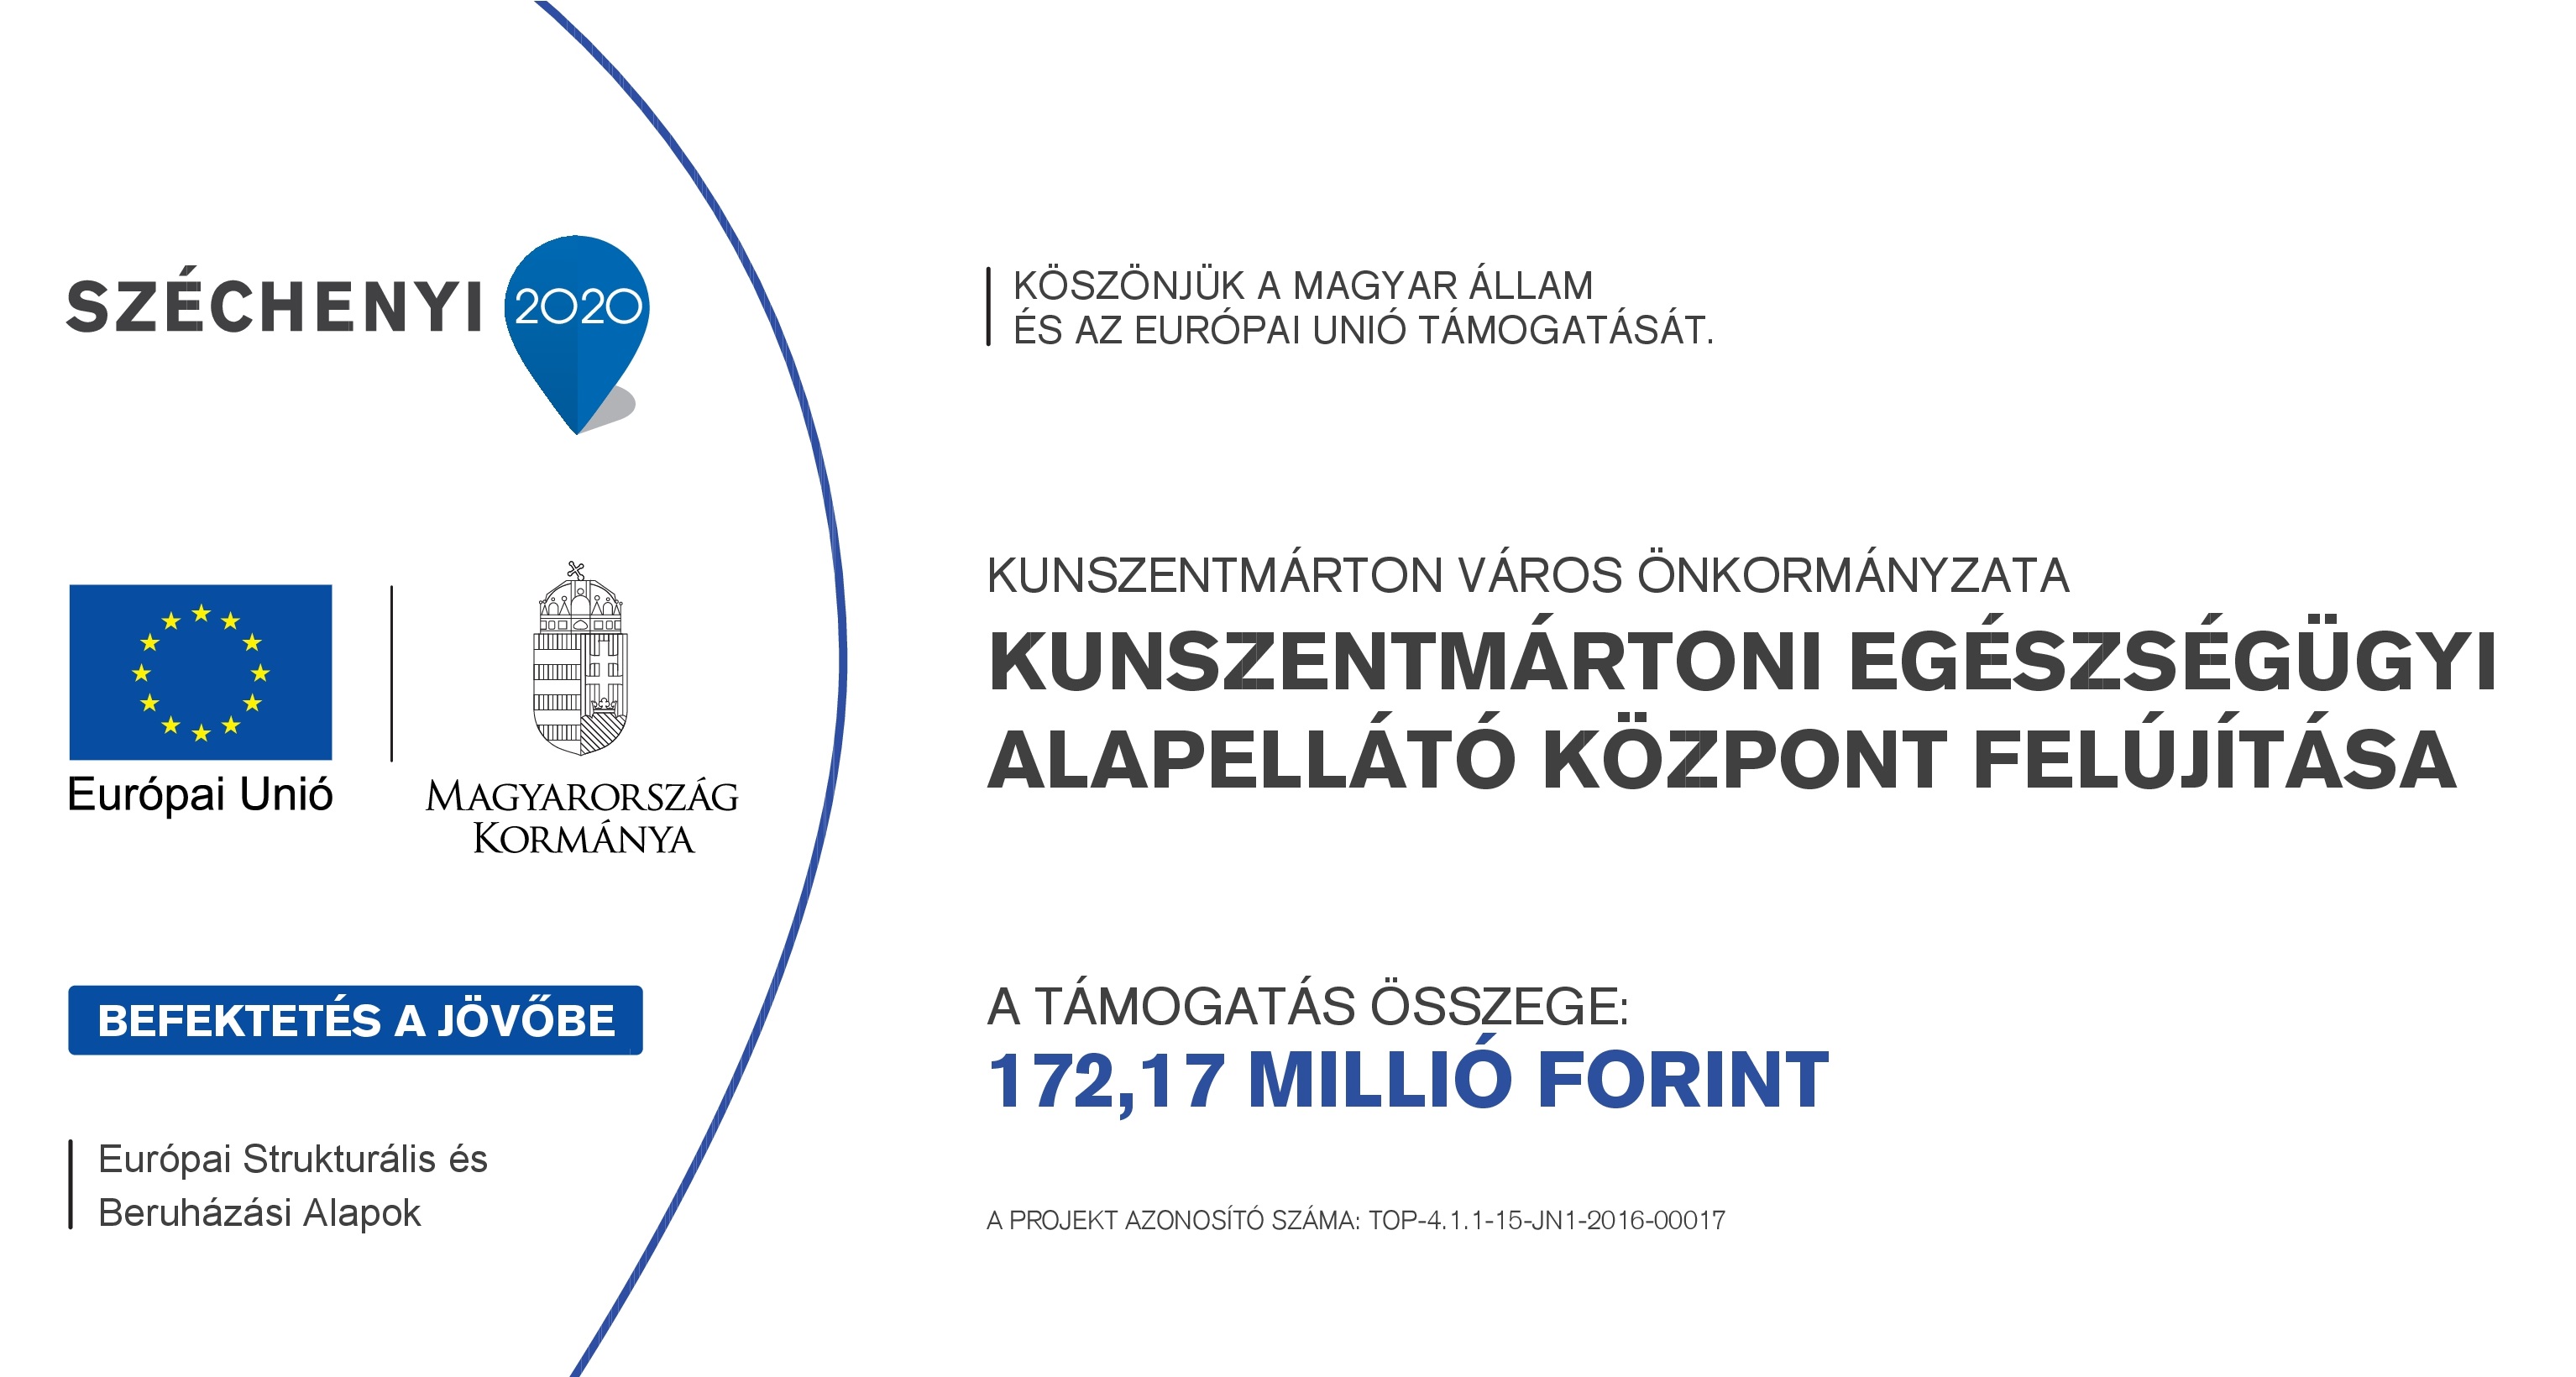 Köszönjük a Magyar Állam és az Európai Unió támogatását Kunszentmárton Város Önkormányzata Kunszentmártoni Egészségügyi Alapellátó Központ Felújítása, a támogatás összege 172,17 millió Ft, azonosító TOP-4.1.1-15-JN1-2016-00017